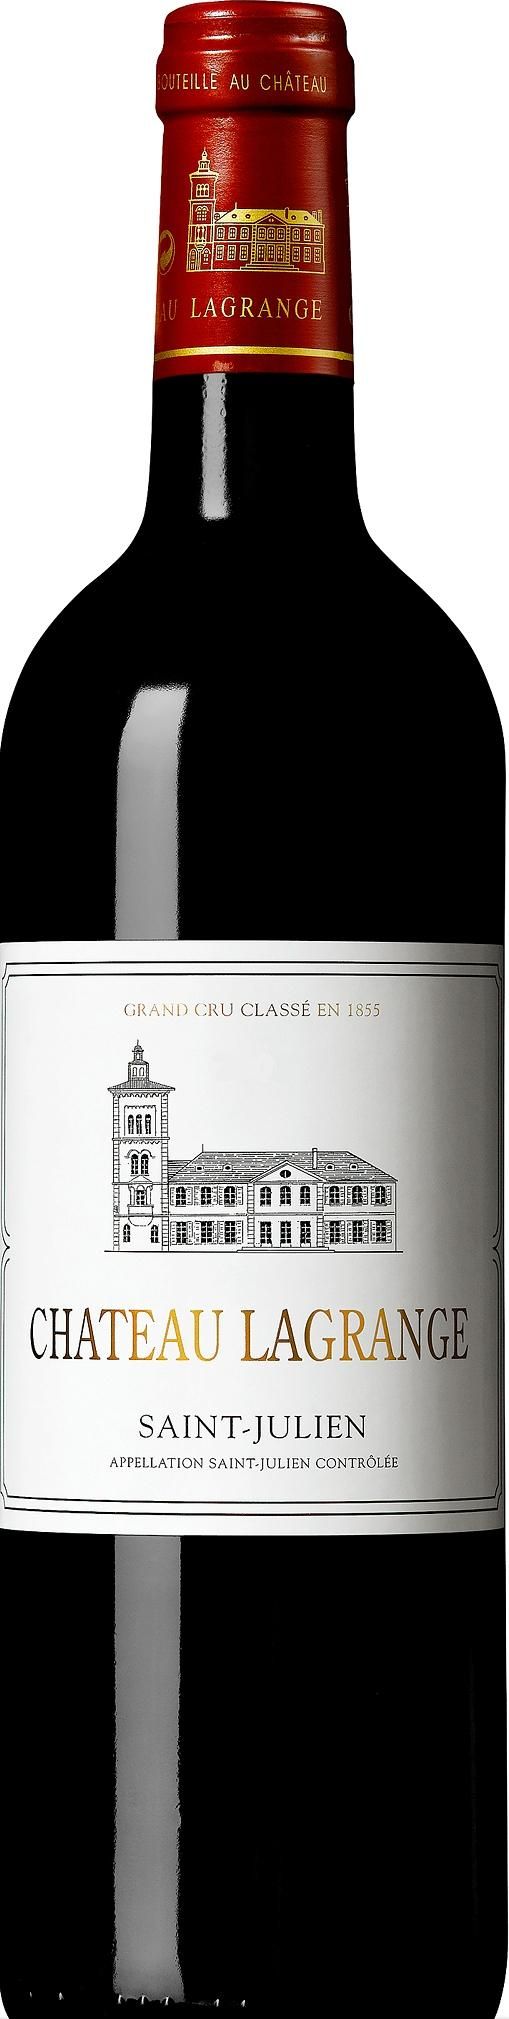 Chateau Lagrange, Grand Cru Classe, 2007